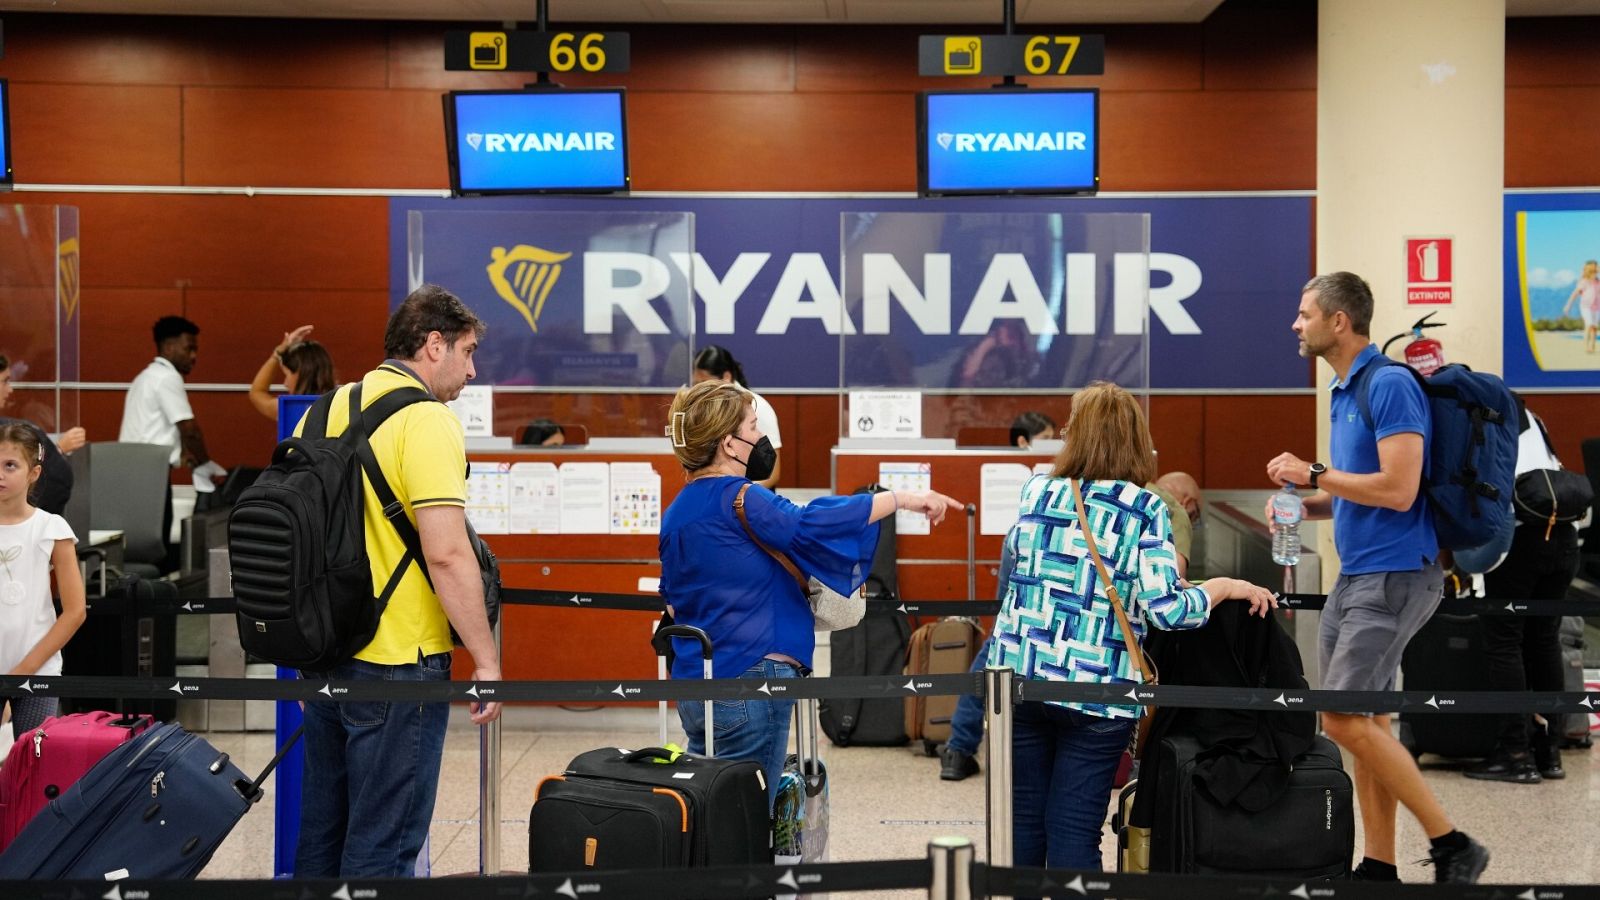 Pasajeros esperan para embarcar ante un mostrador de Ryanair